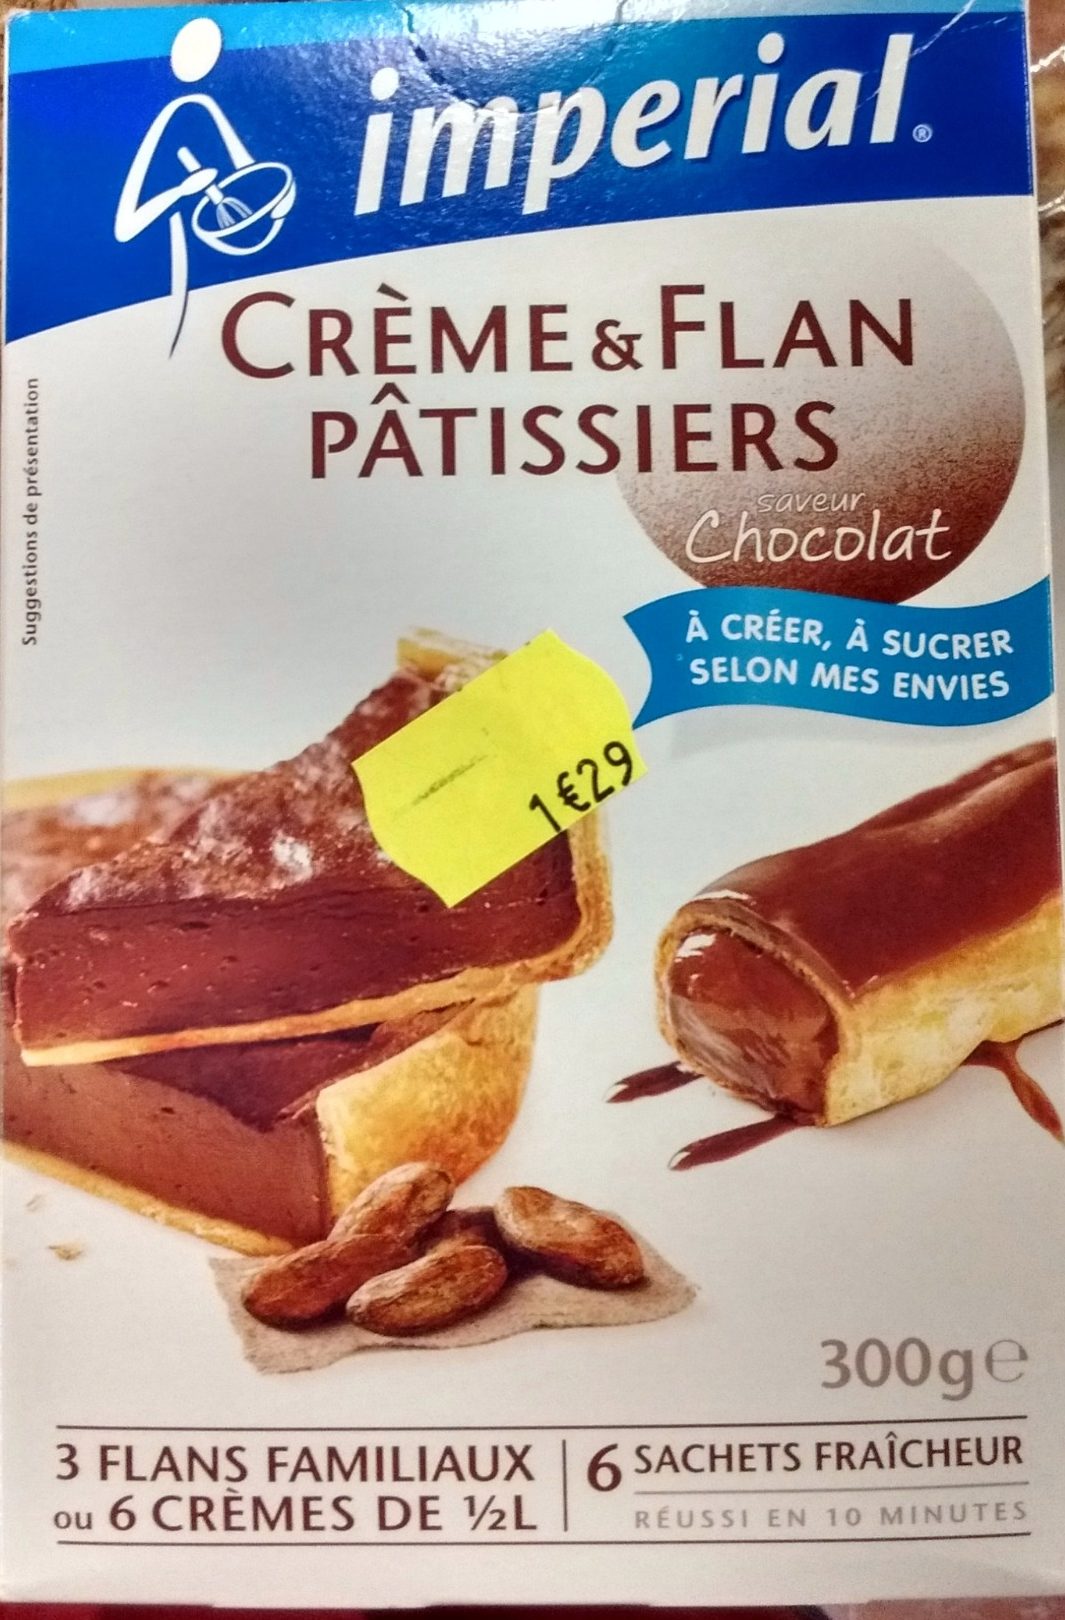 Crème & Flan Pâtissiers saveur Chocolat - Product - fr